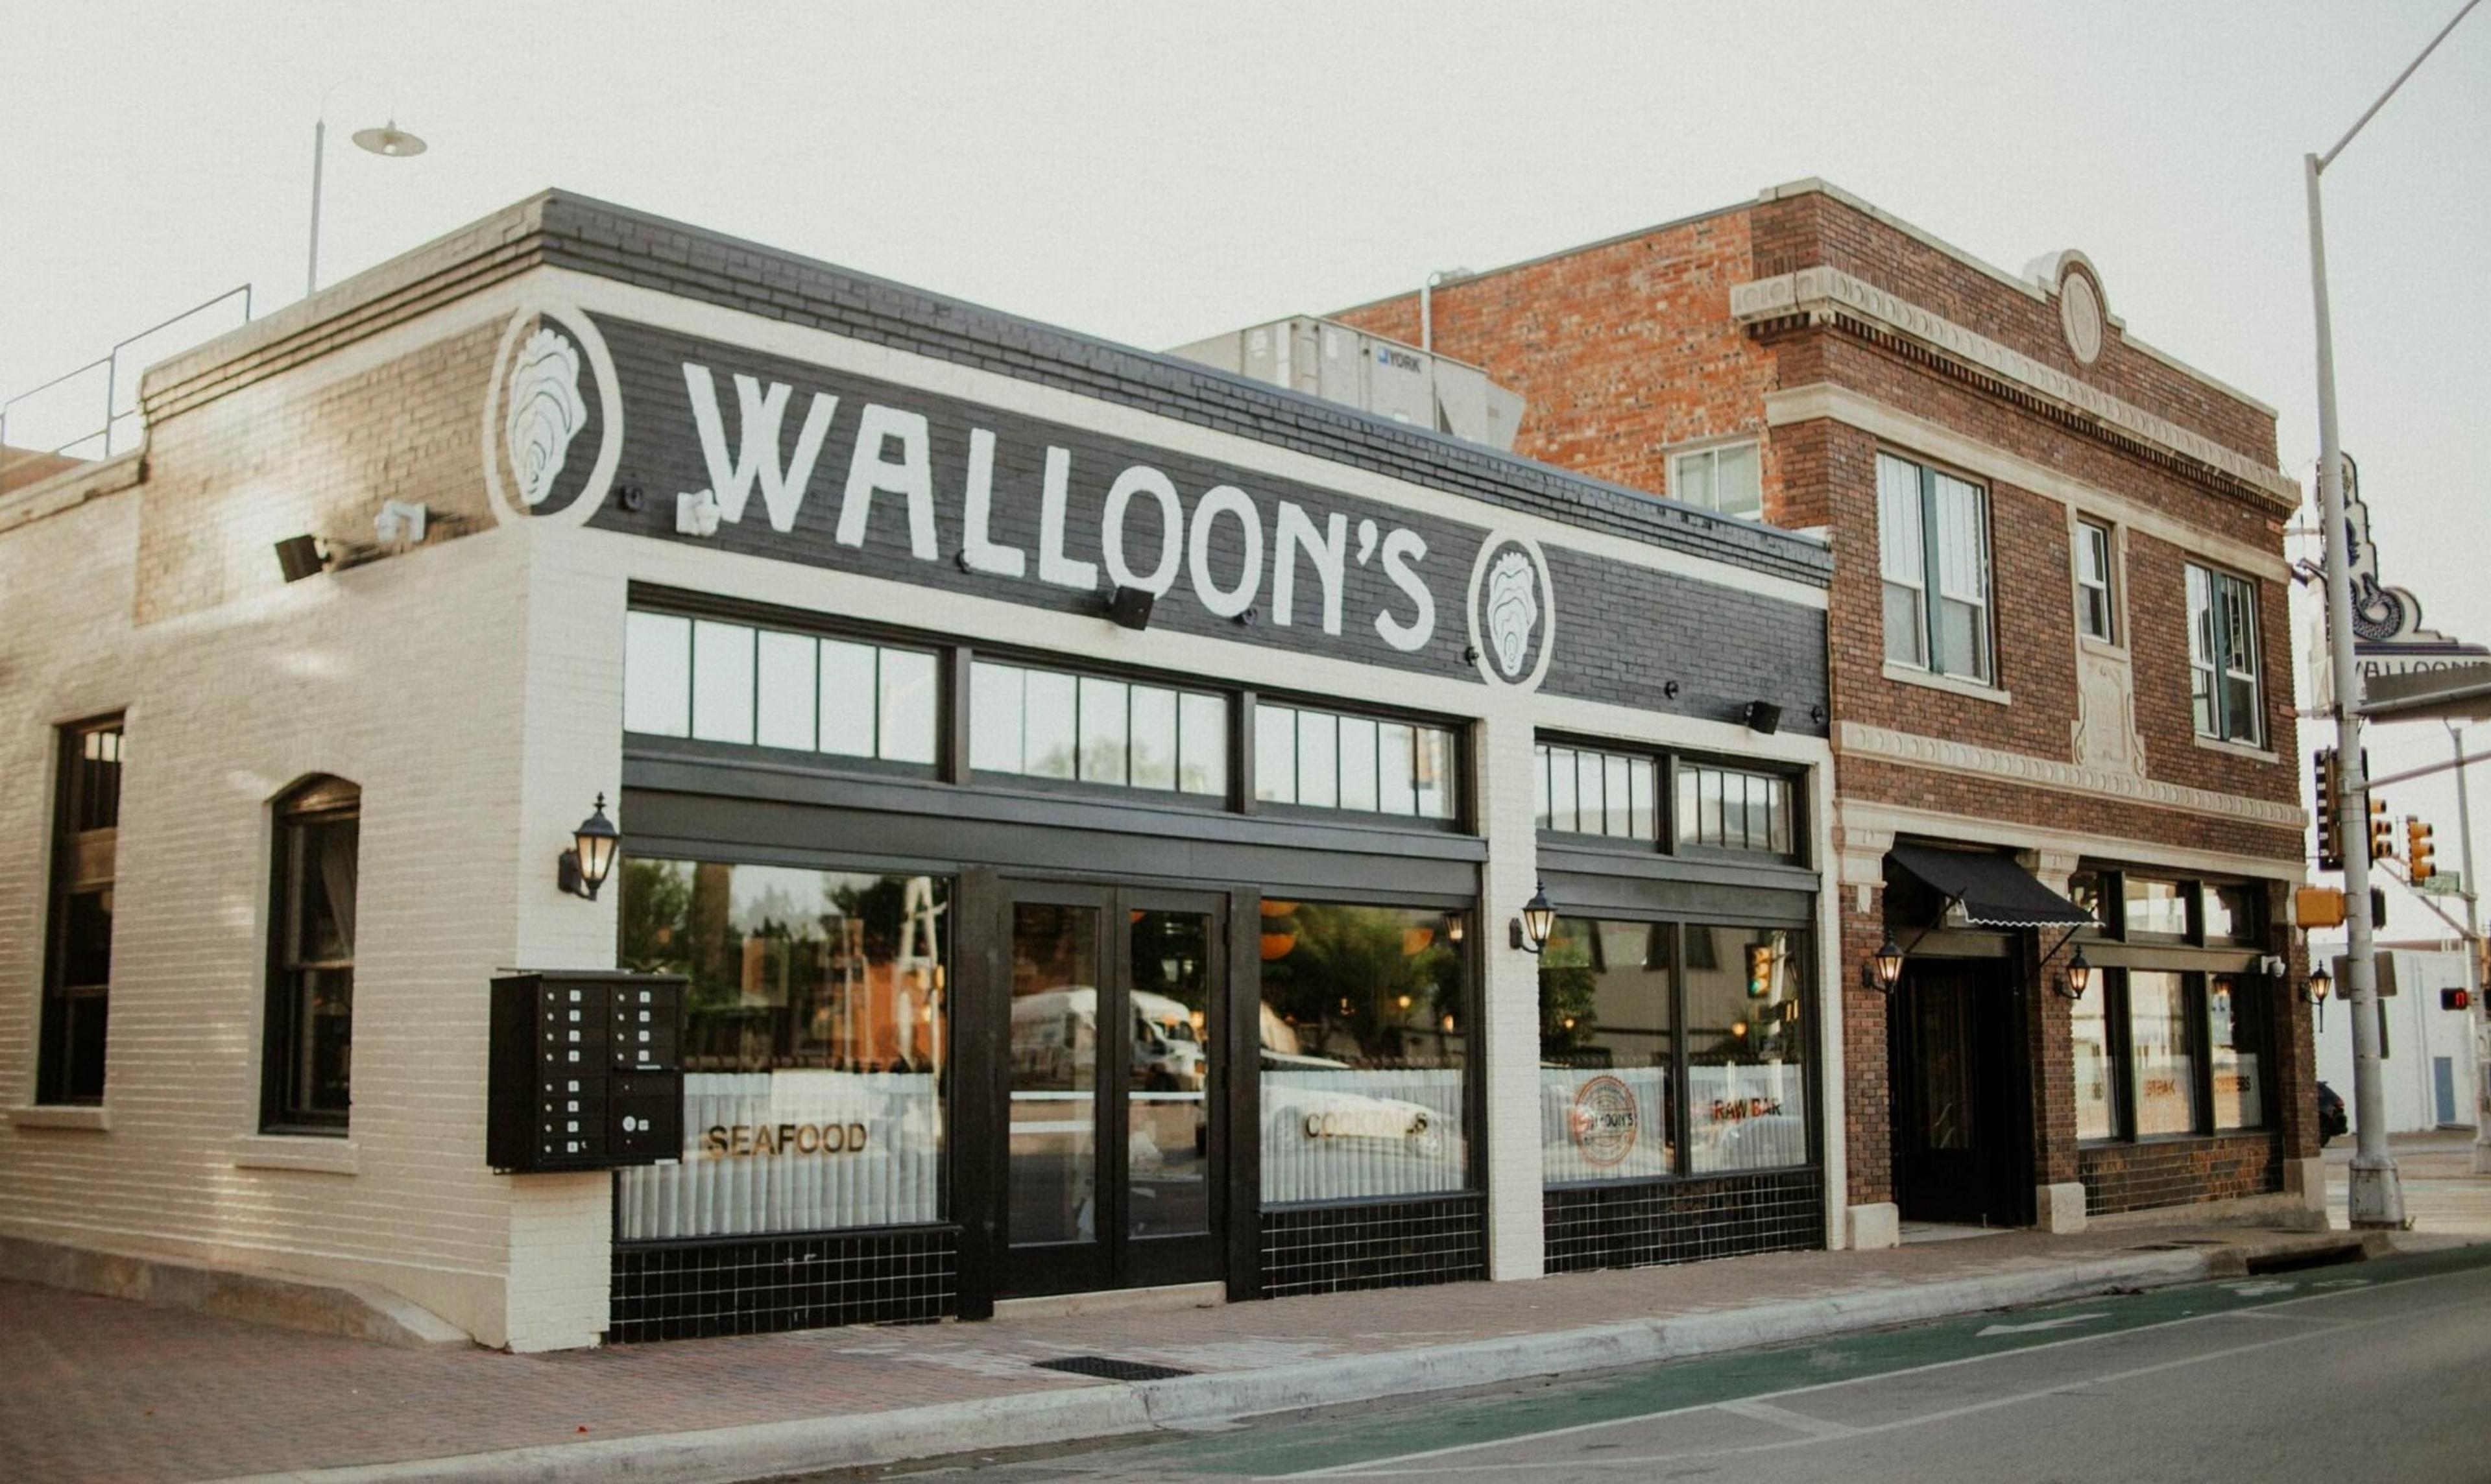 Walloon's Restaurant